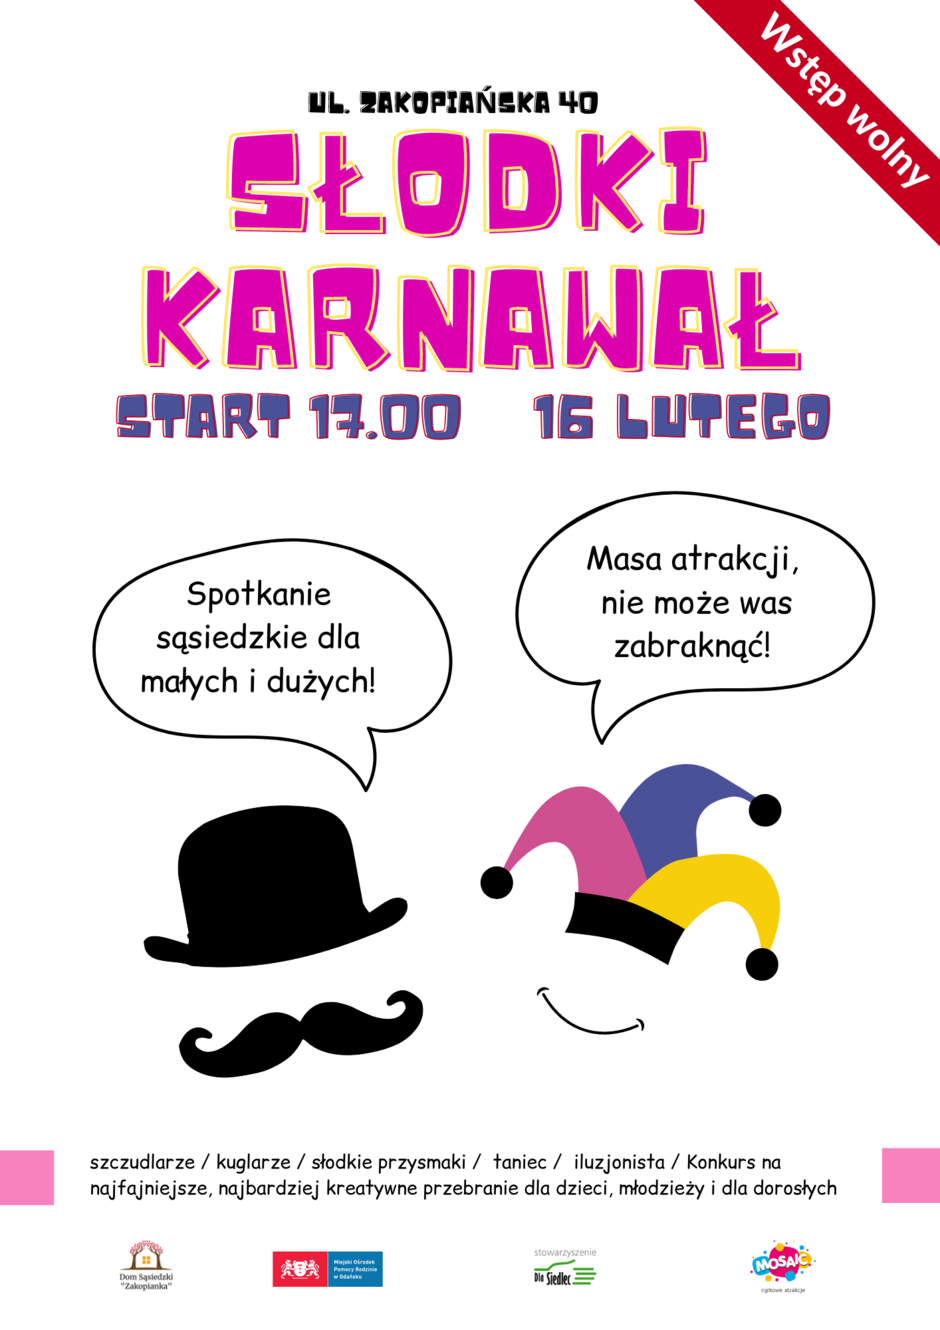 Plakat karnawału w Zakopiance - źródło organizatorzy imprezy